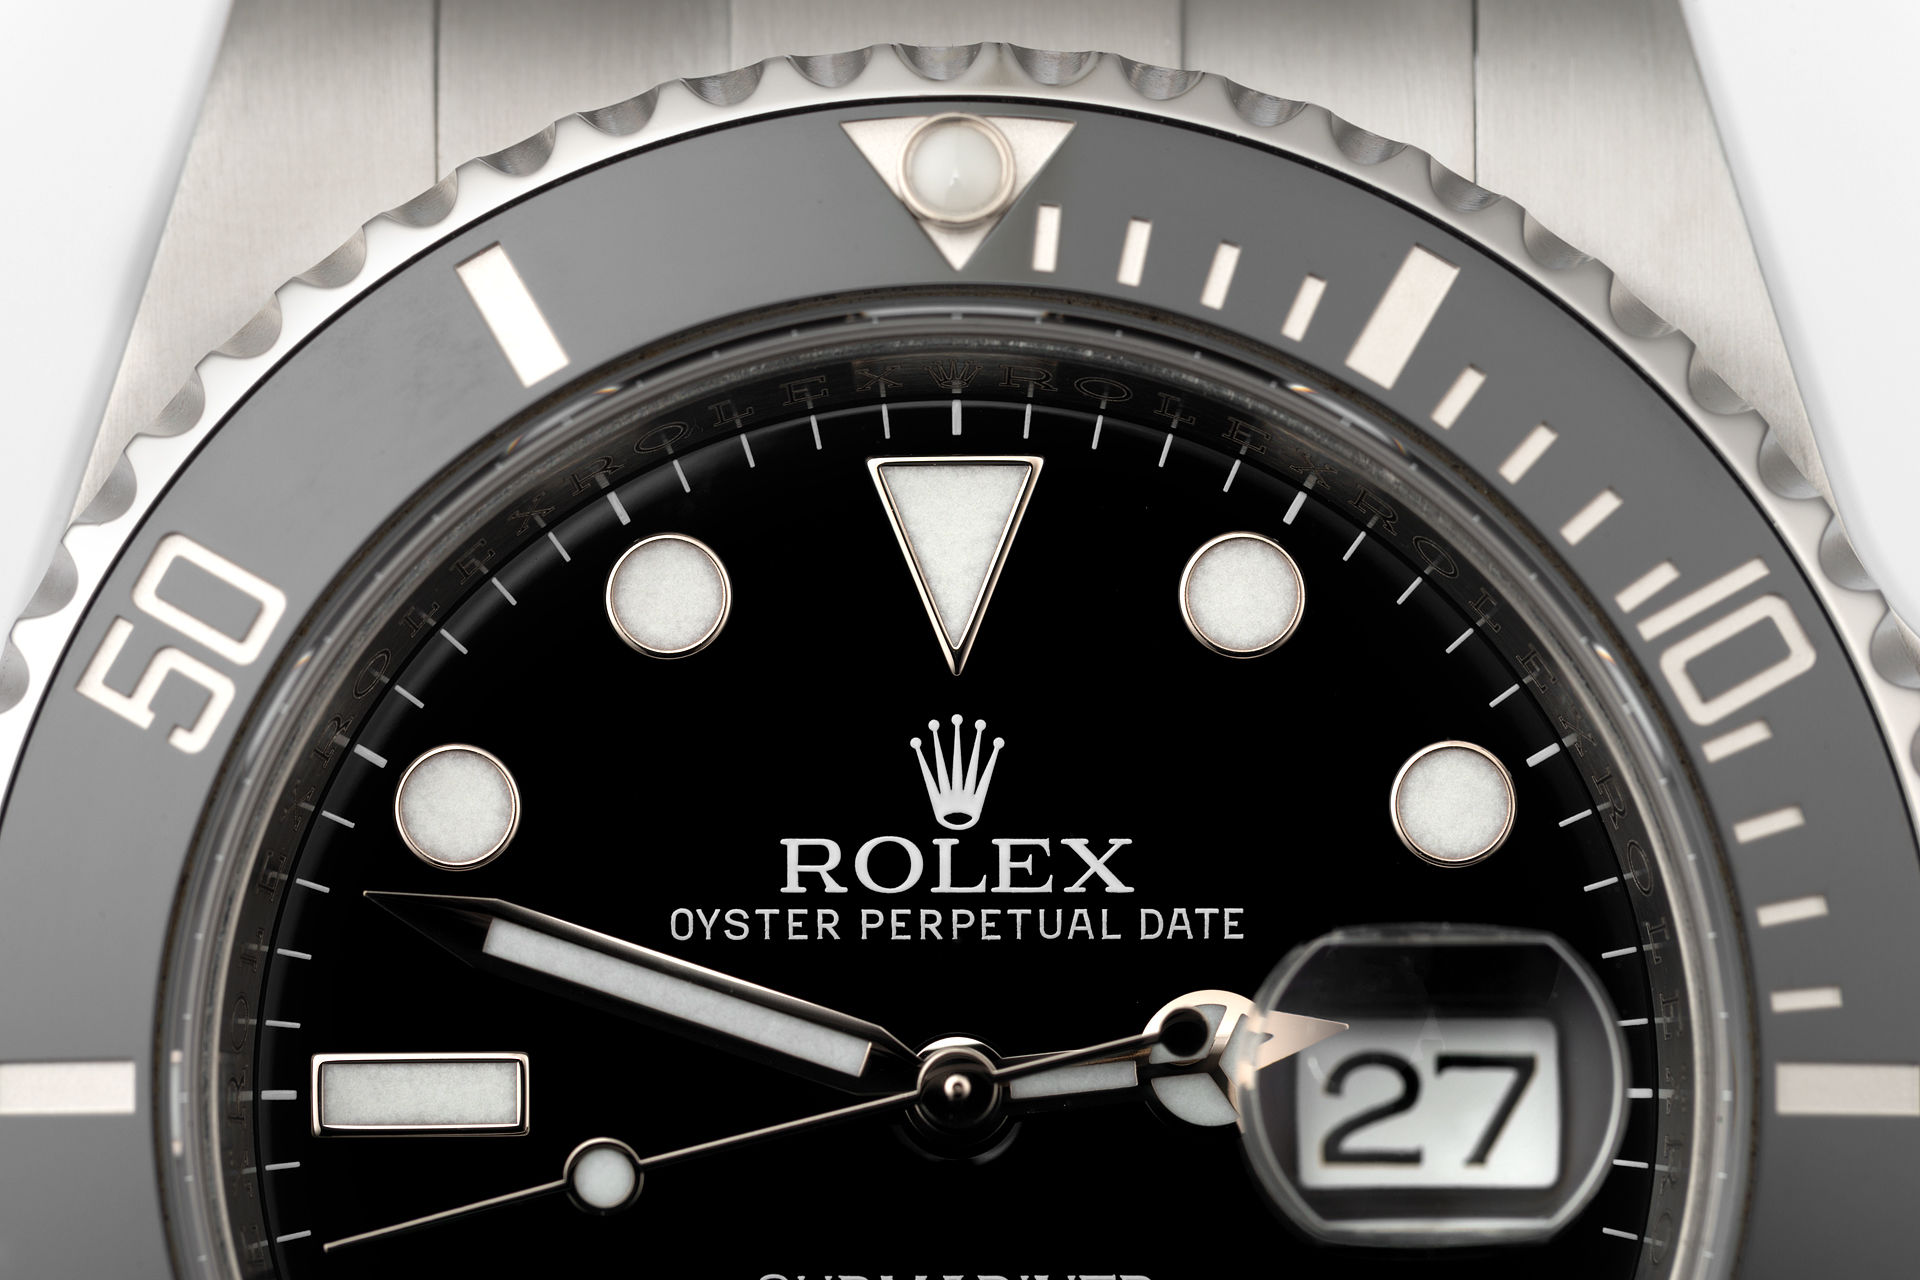 ref 116610LN | 'Full Set' Cerachrom Bezel | Rolex Submariner Date